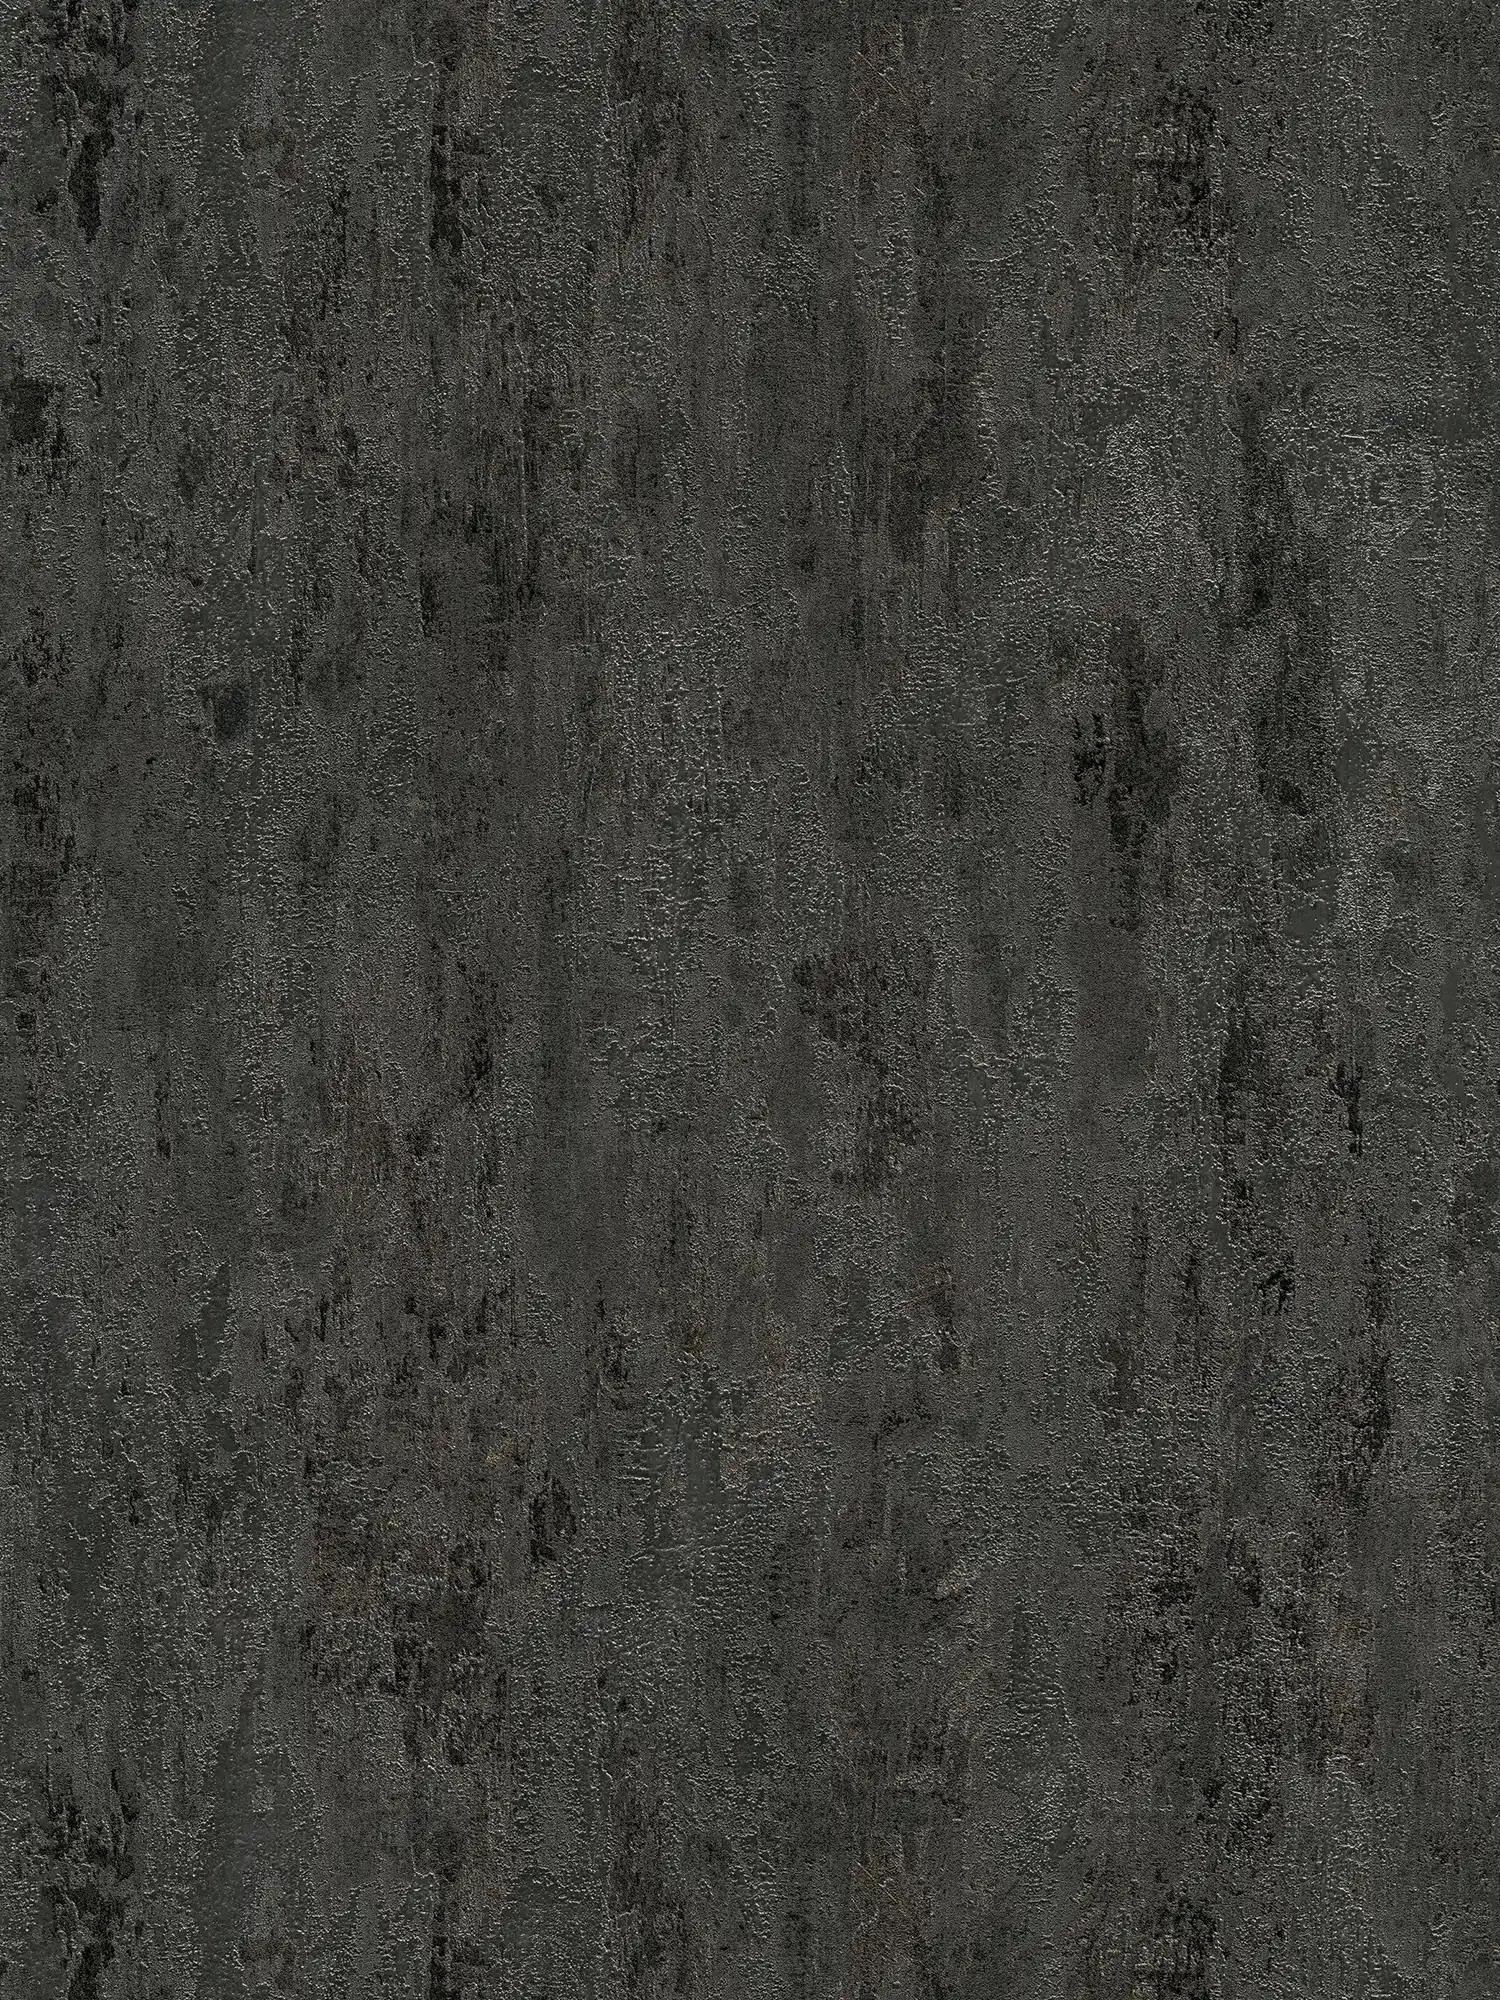 Papel pintado rústico con textura metálica aspecto antracita - negro, plata, gris
